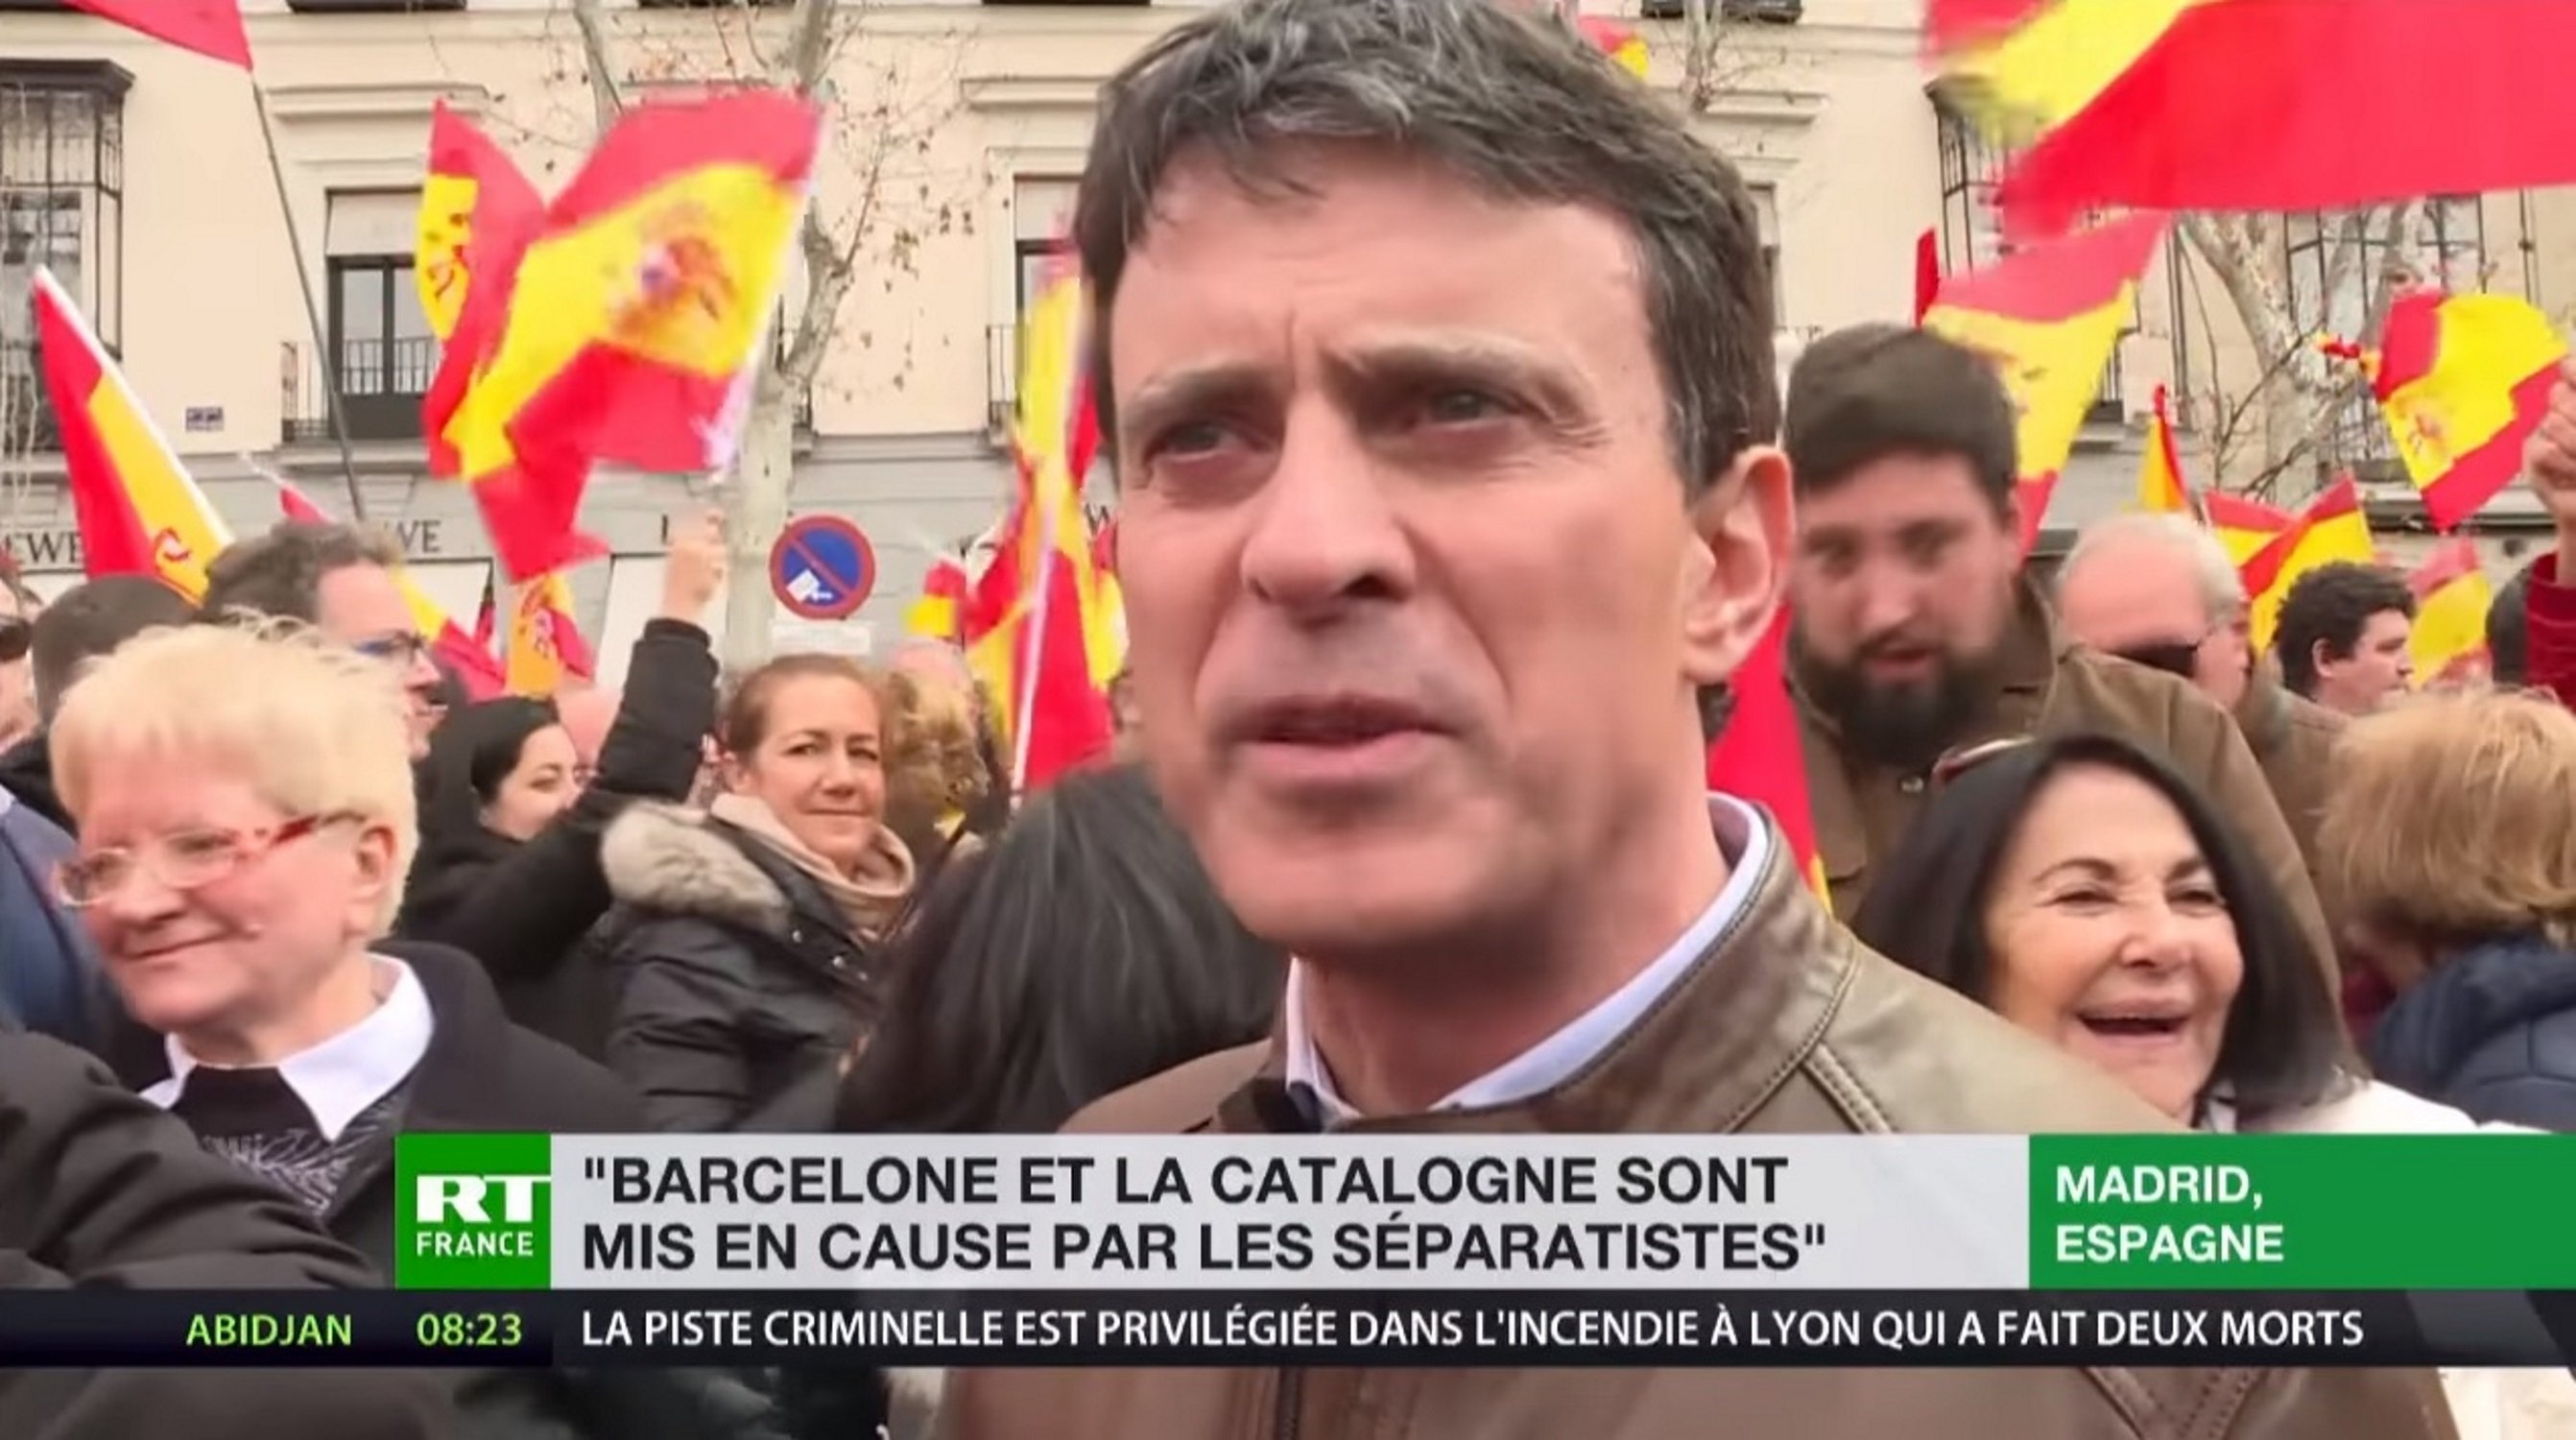 Manuel Valls habla francés y ultras lo increpan porque piensan que es catalán